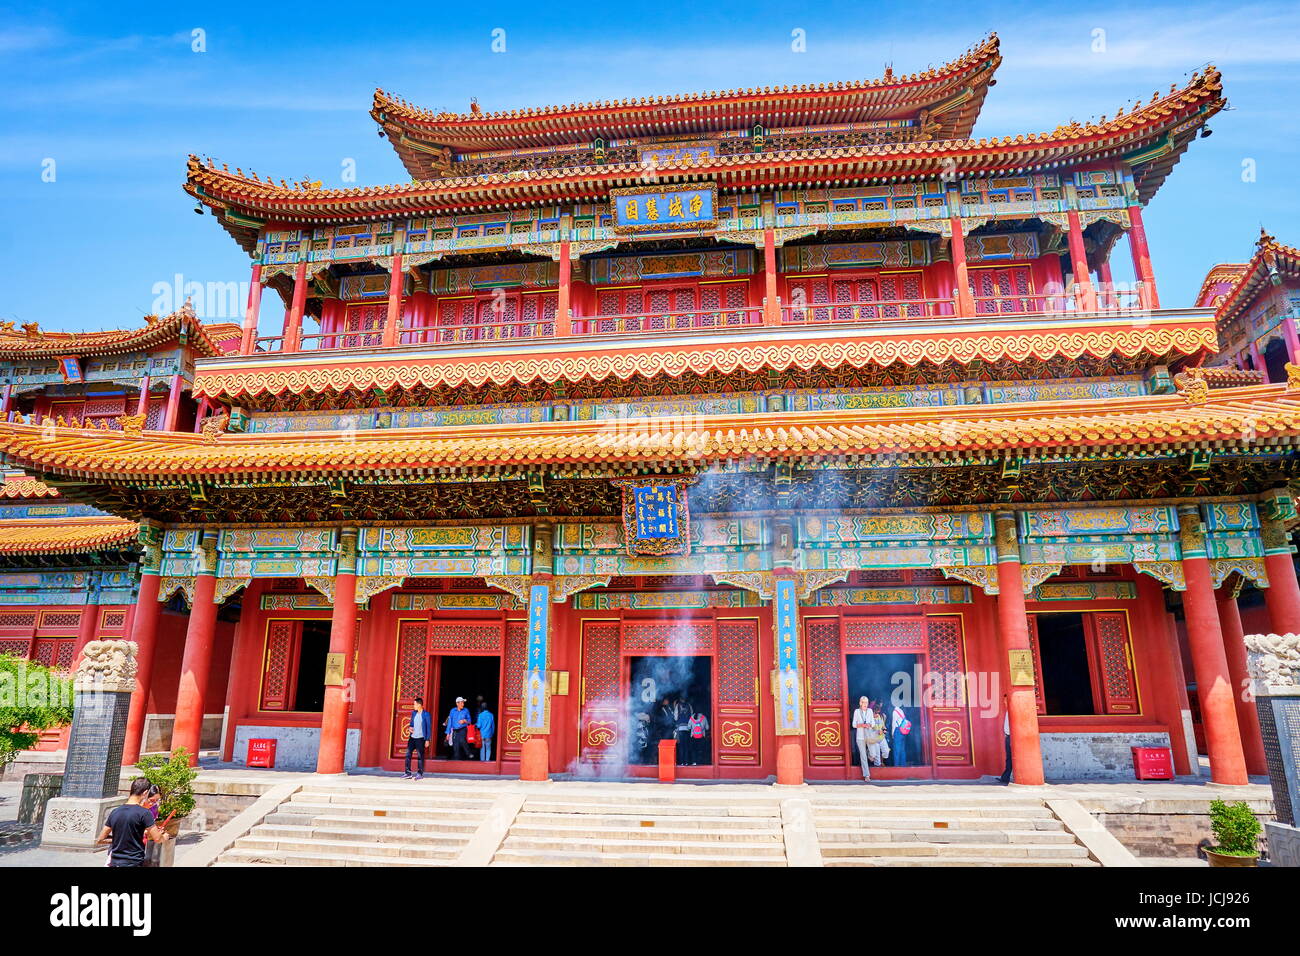 Yonghe Gong Lama tempio buddista, Pechino, Cina Foto Stock